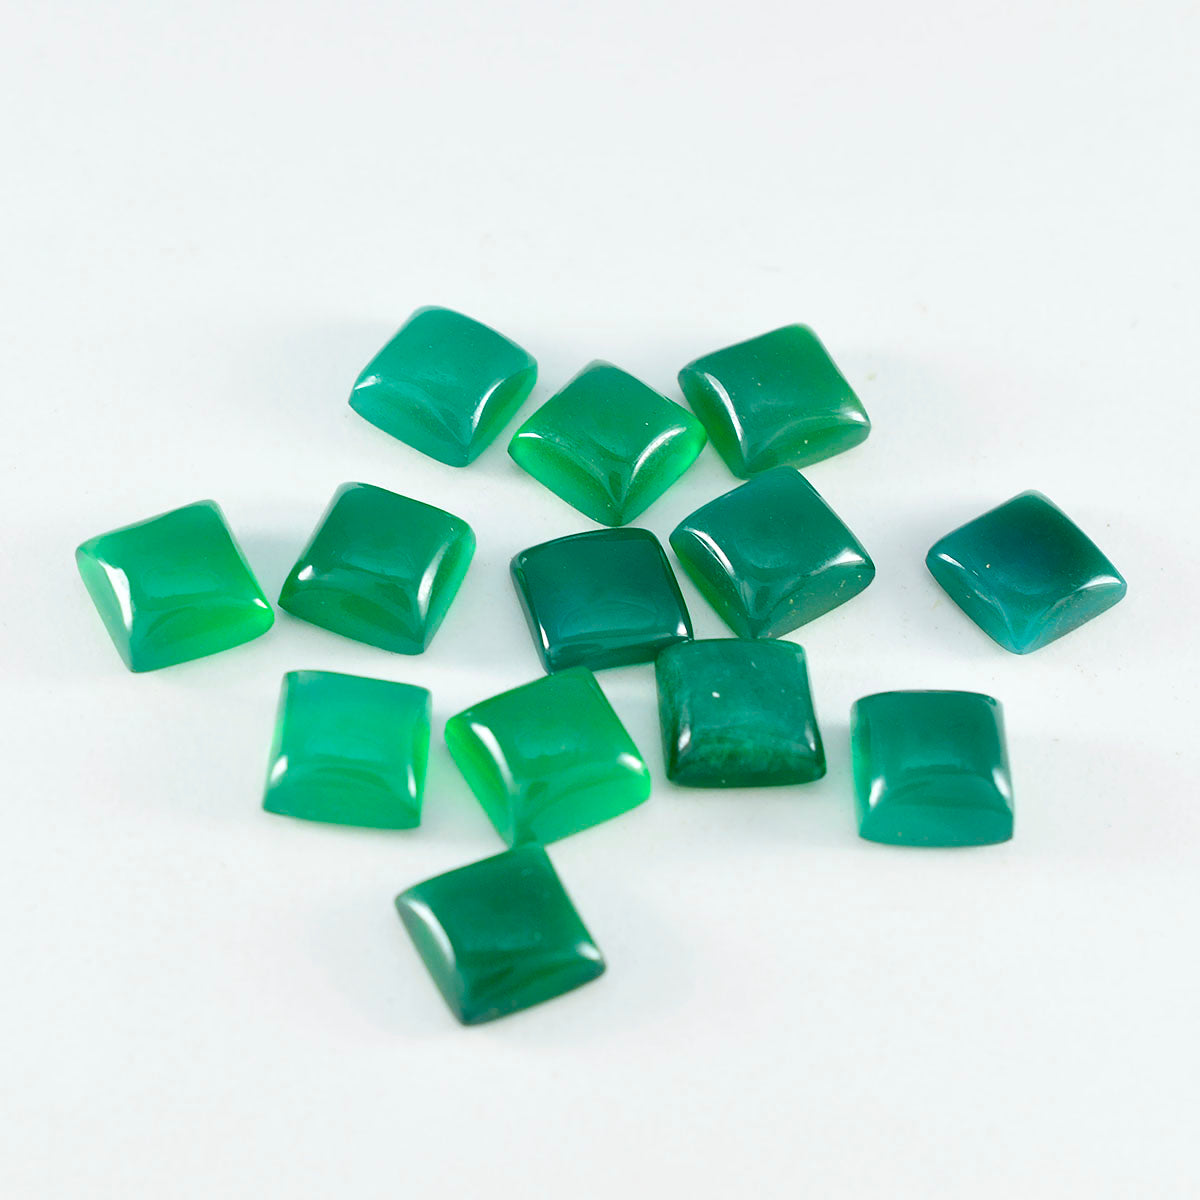 riyogems 1шт зеленый оникс кабошон 4x4 мм квадратной формы + 1 качественный драгоценный камень